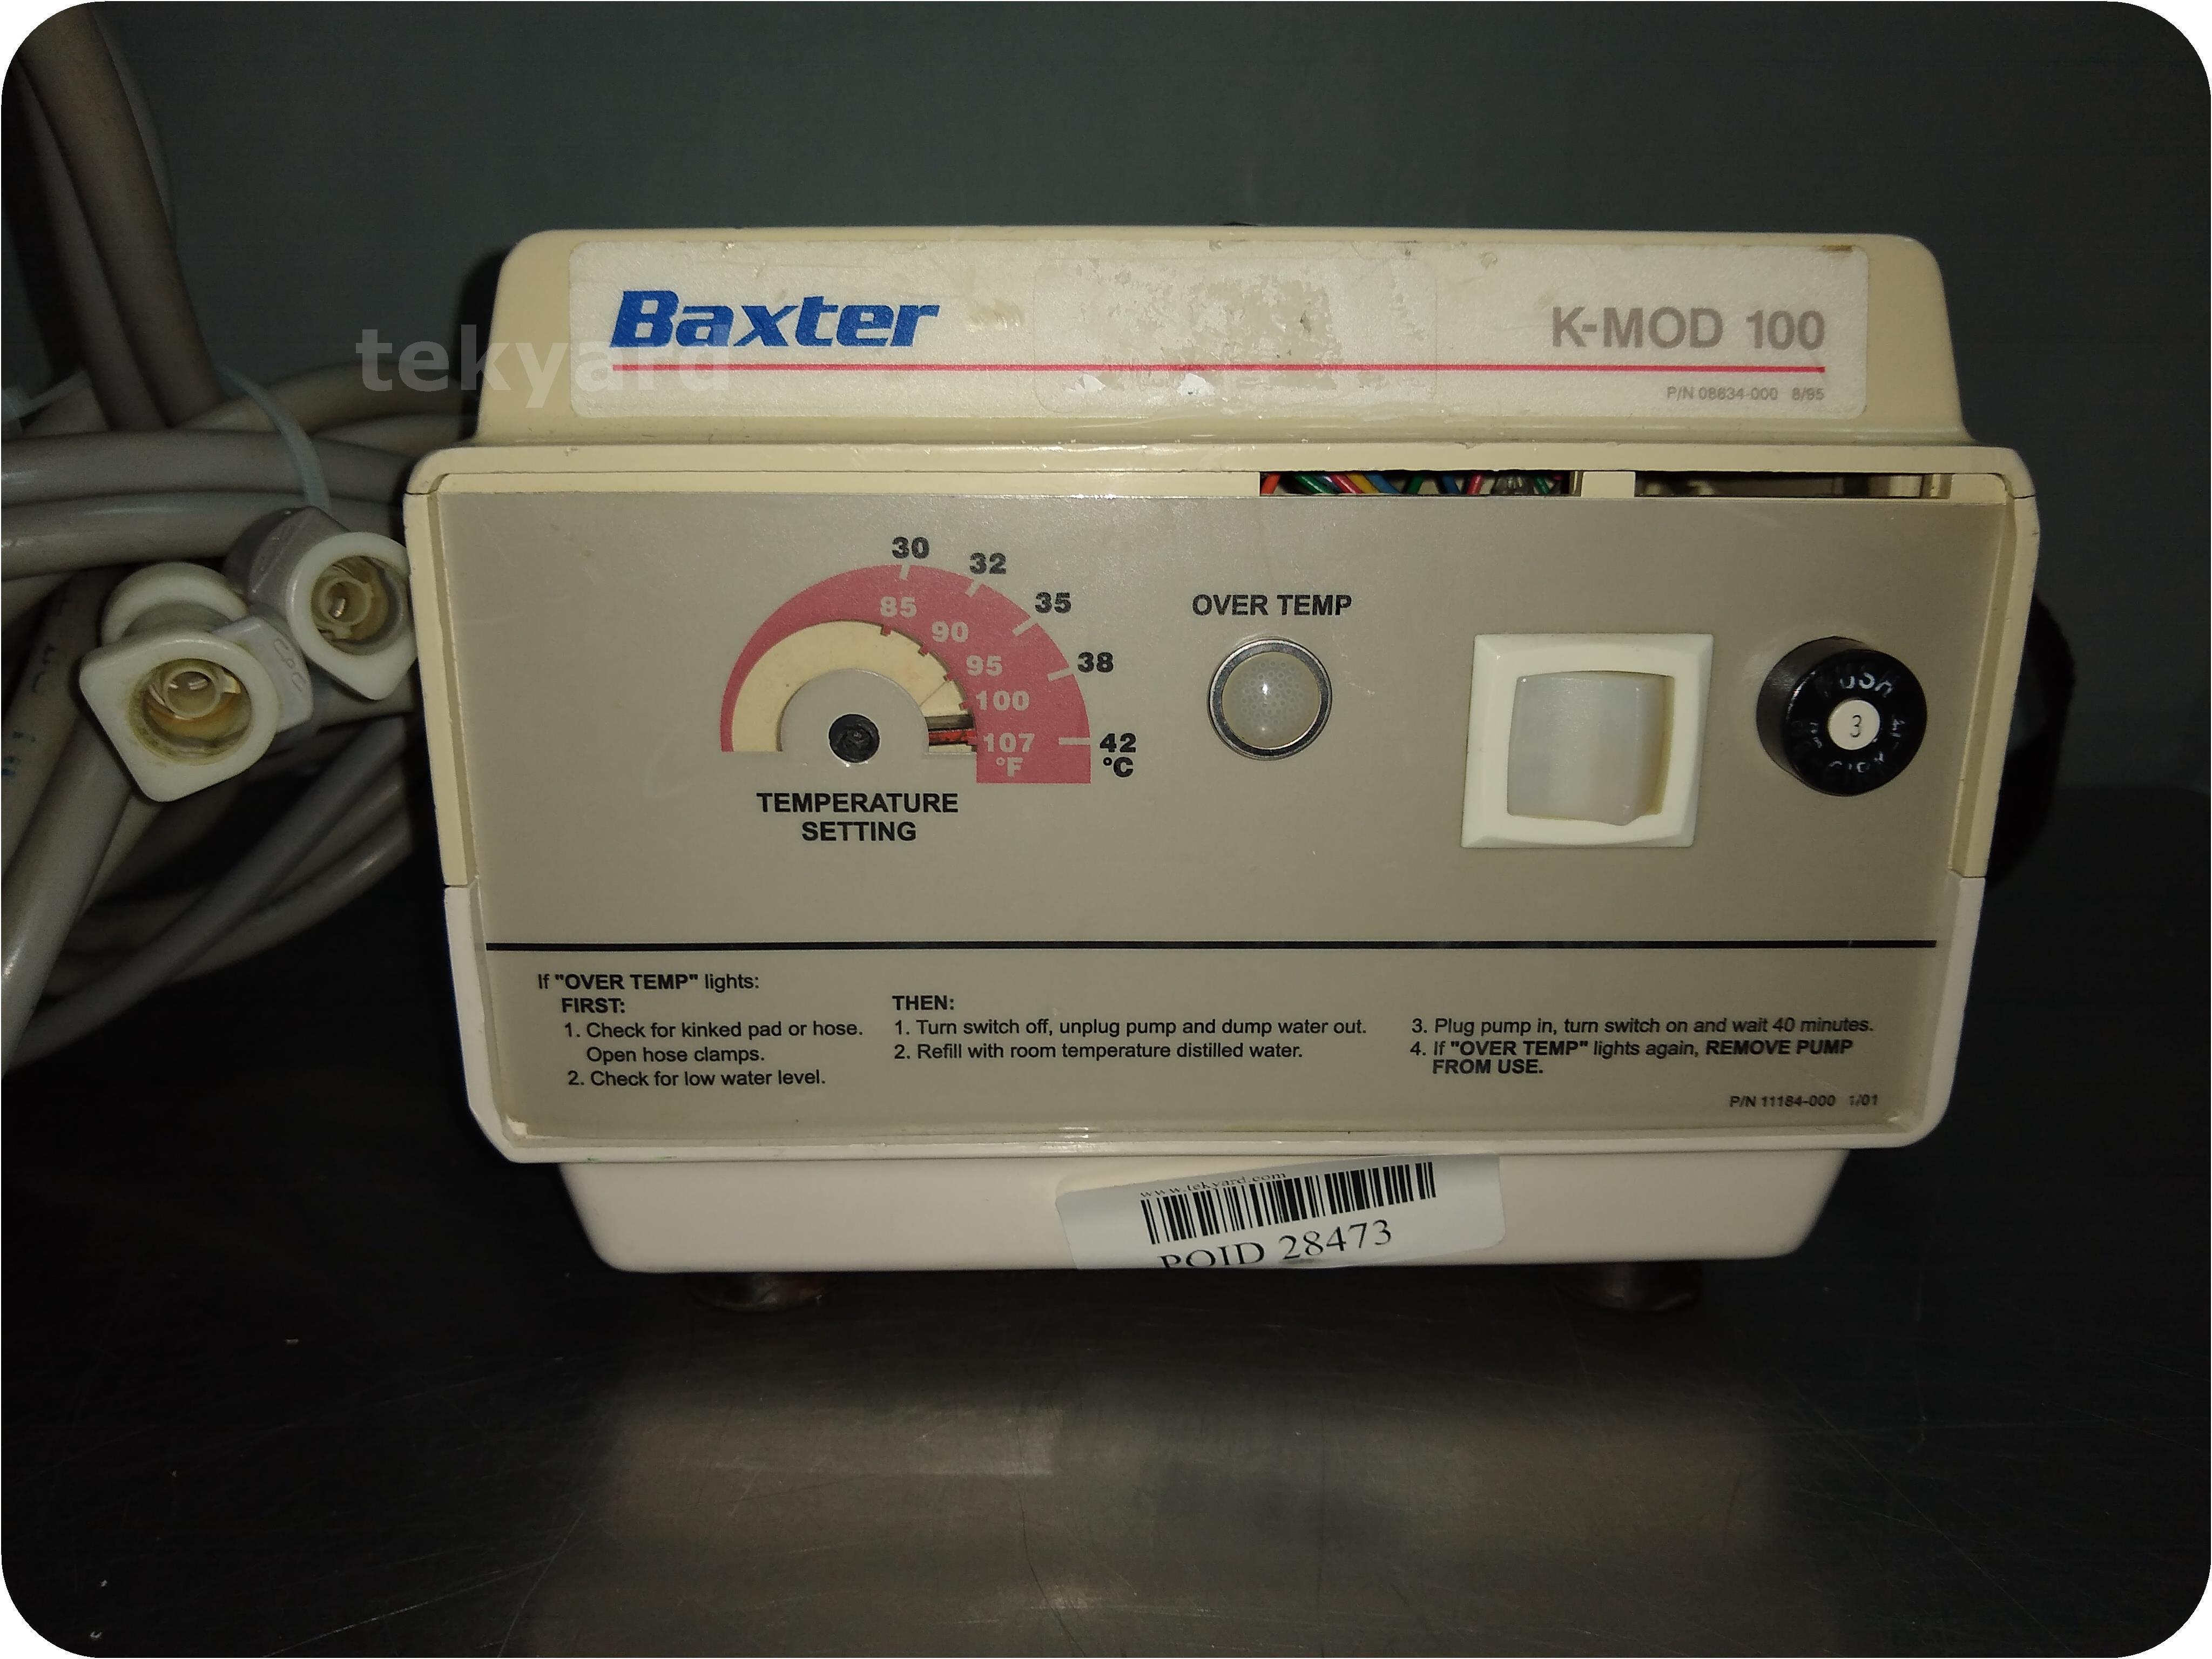 tekyard, LLC. 249375Baxter KMod 100 Heat Therapy Unit